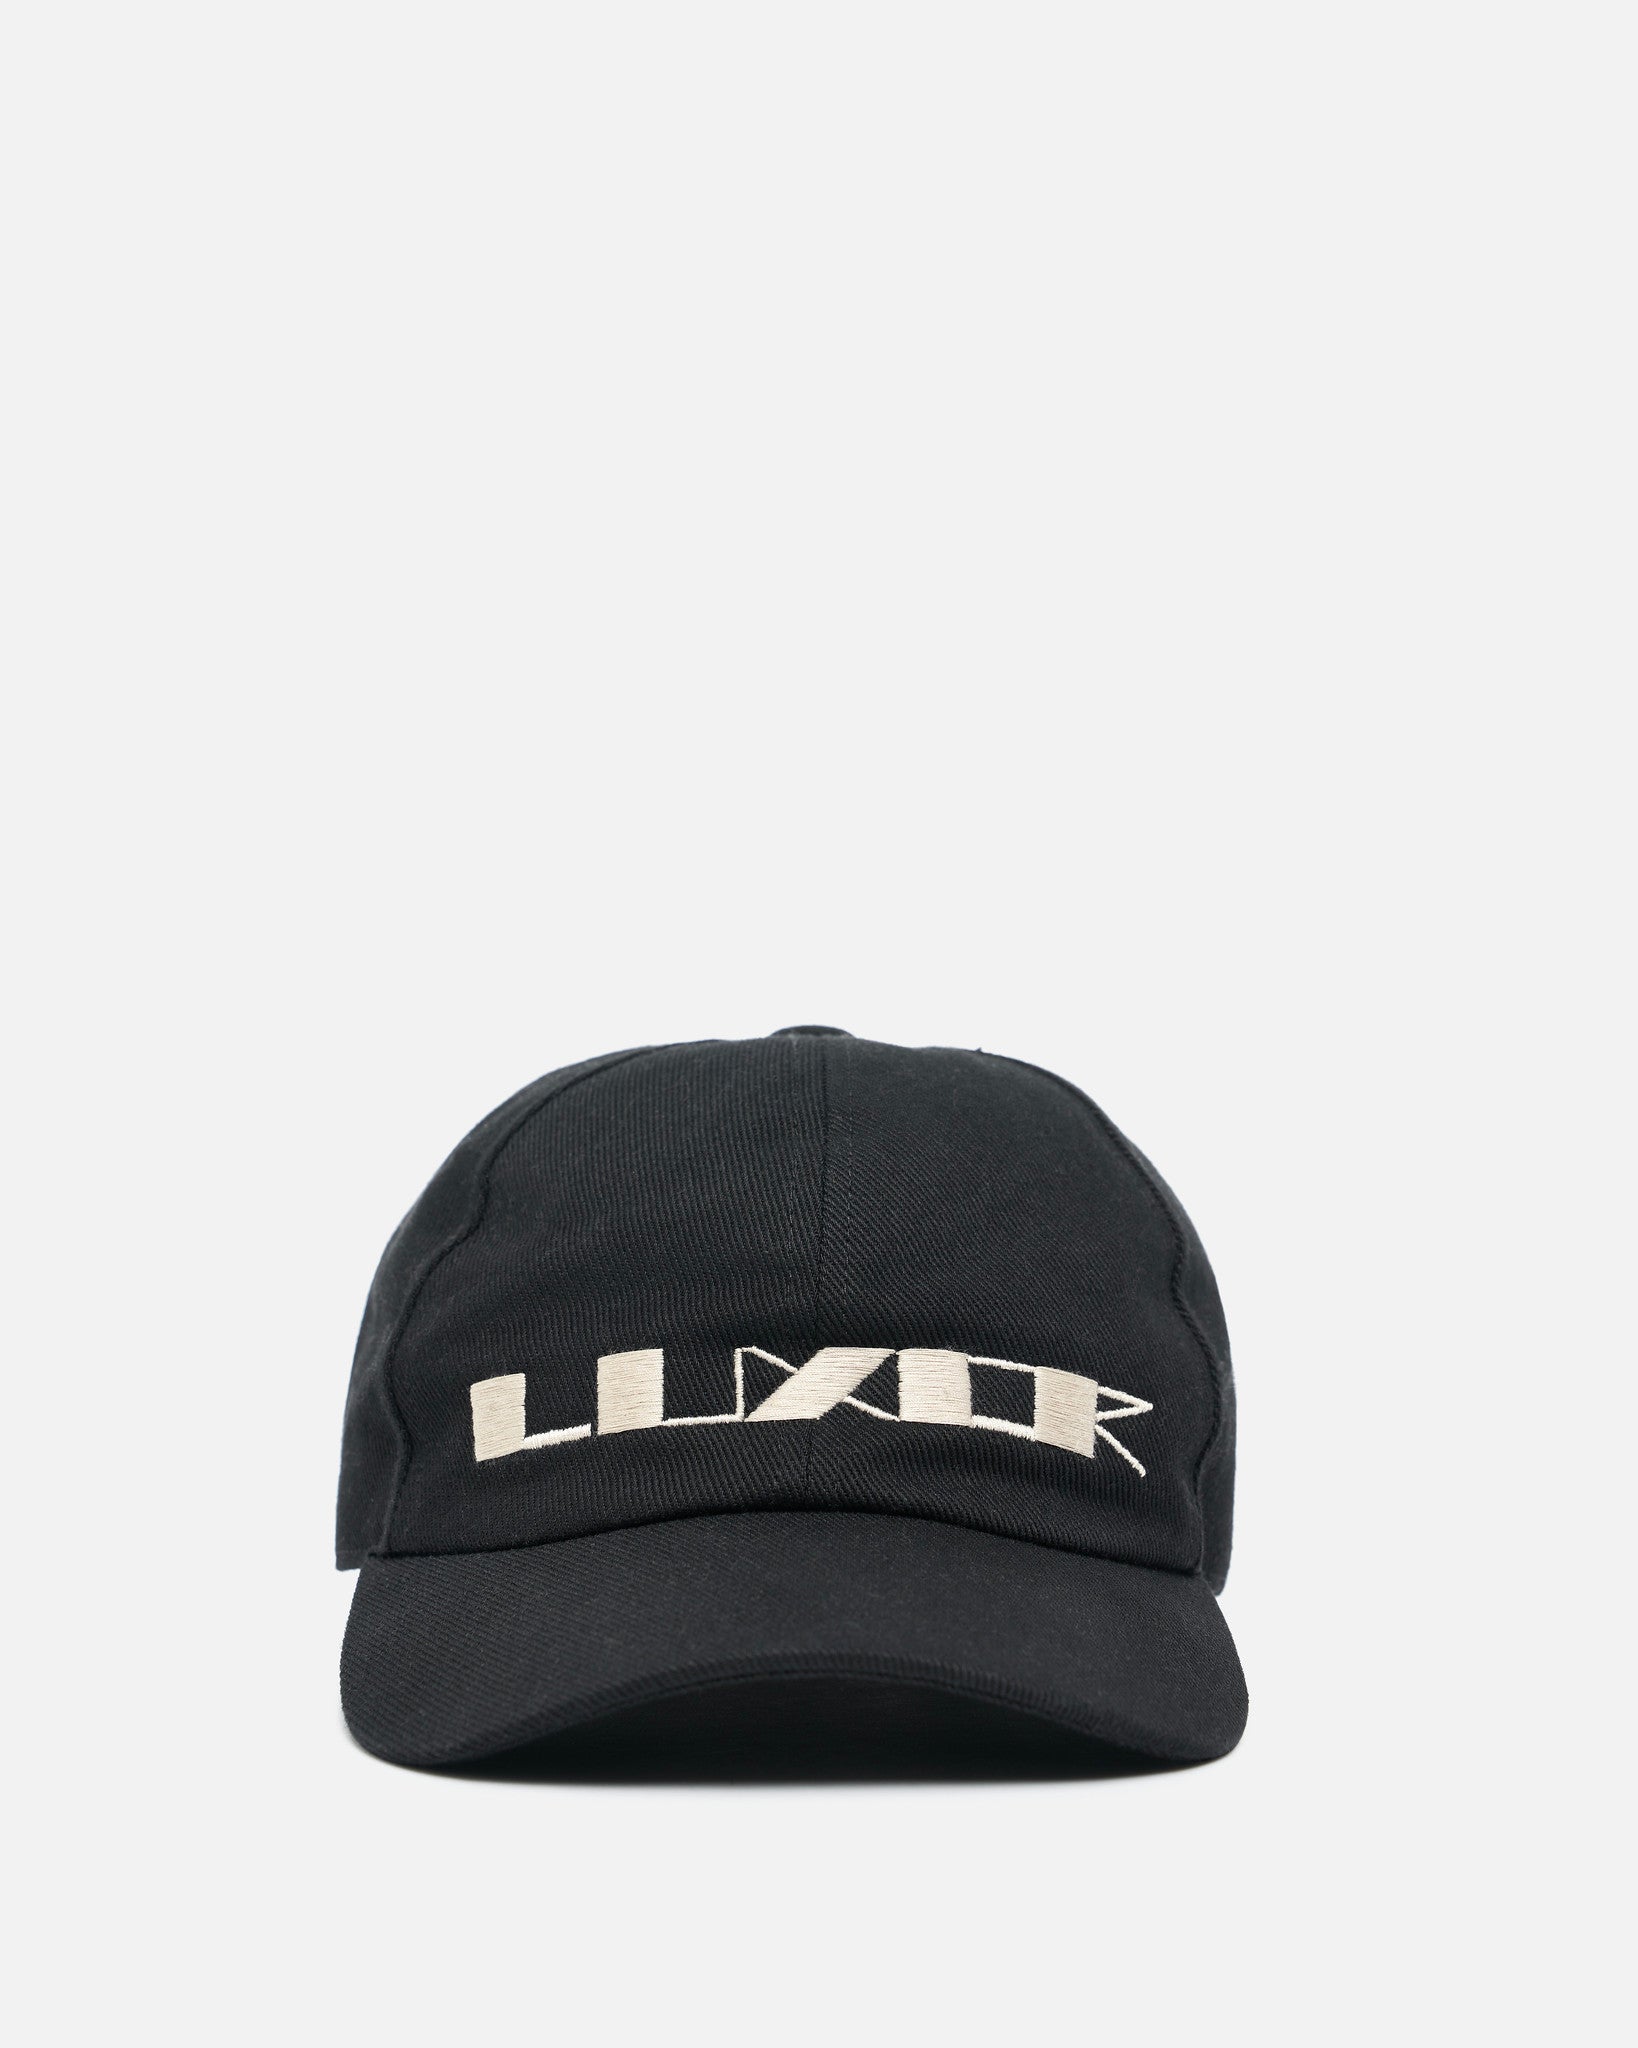 'Luxor' Denim Baseball Cap in Black/Pearl